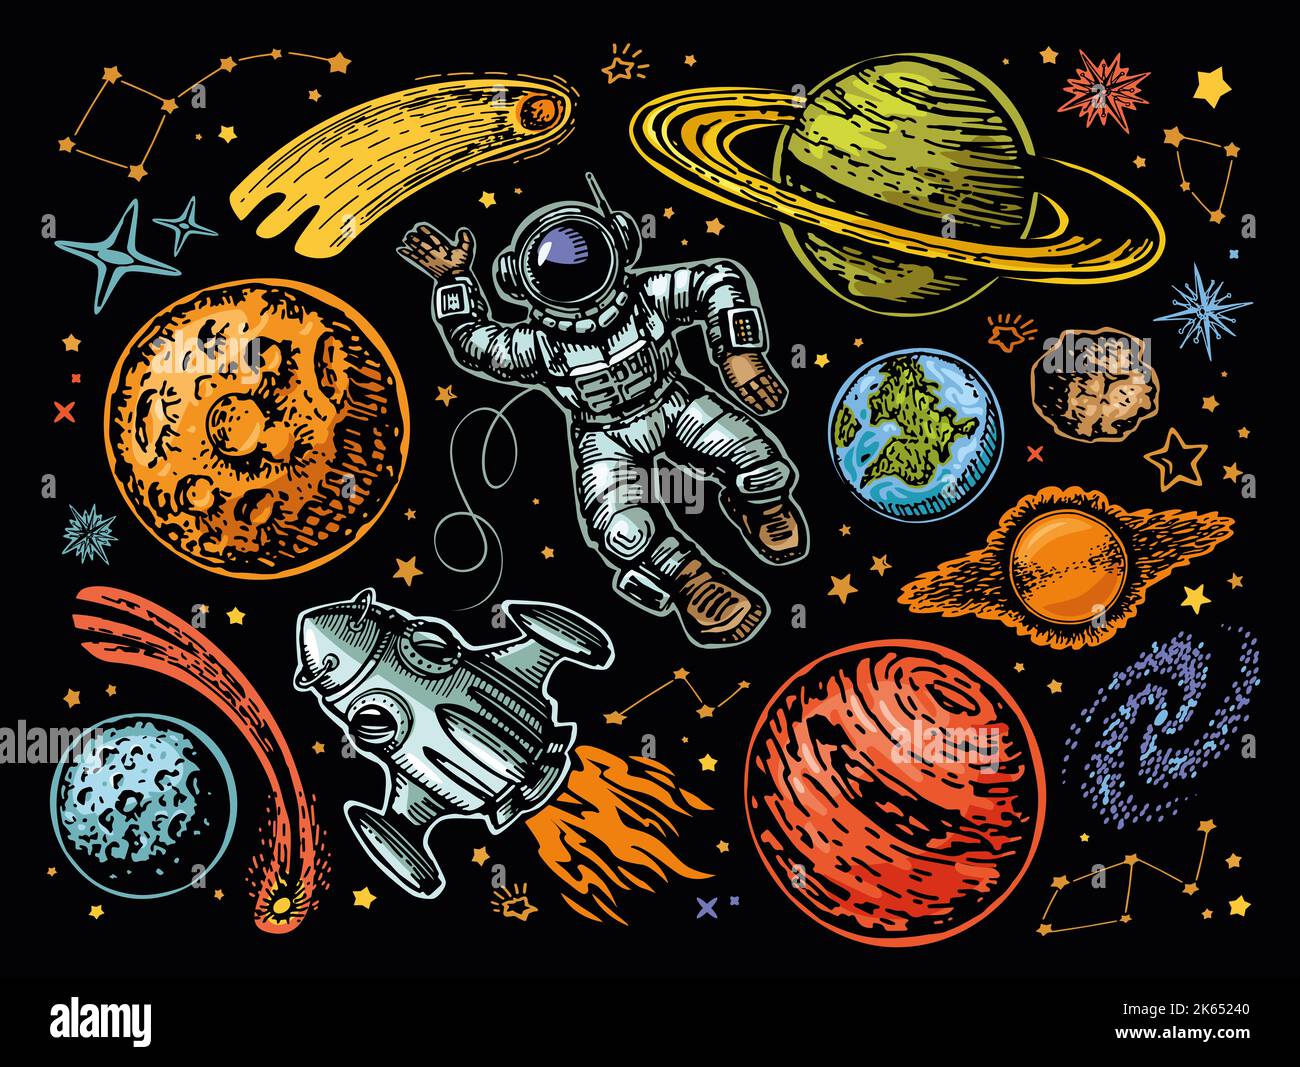 Espace design futuriste créatif. Planètes et vaisseau spatial, fusée, étoiles, astronaute. Illustration haute en couleur de l'astronomie Banque D'Images